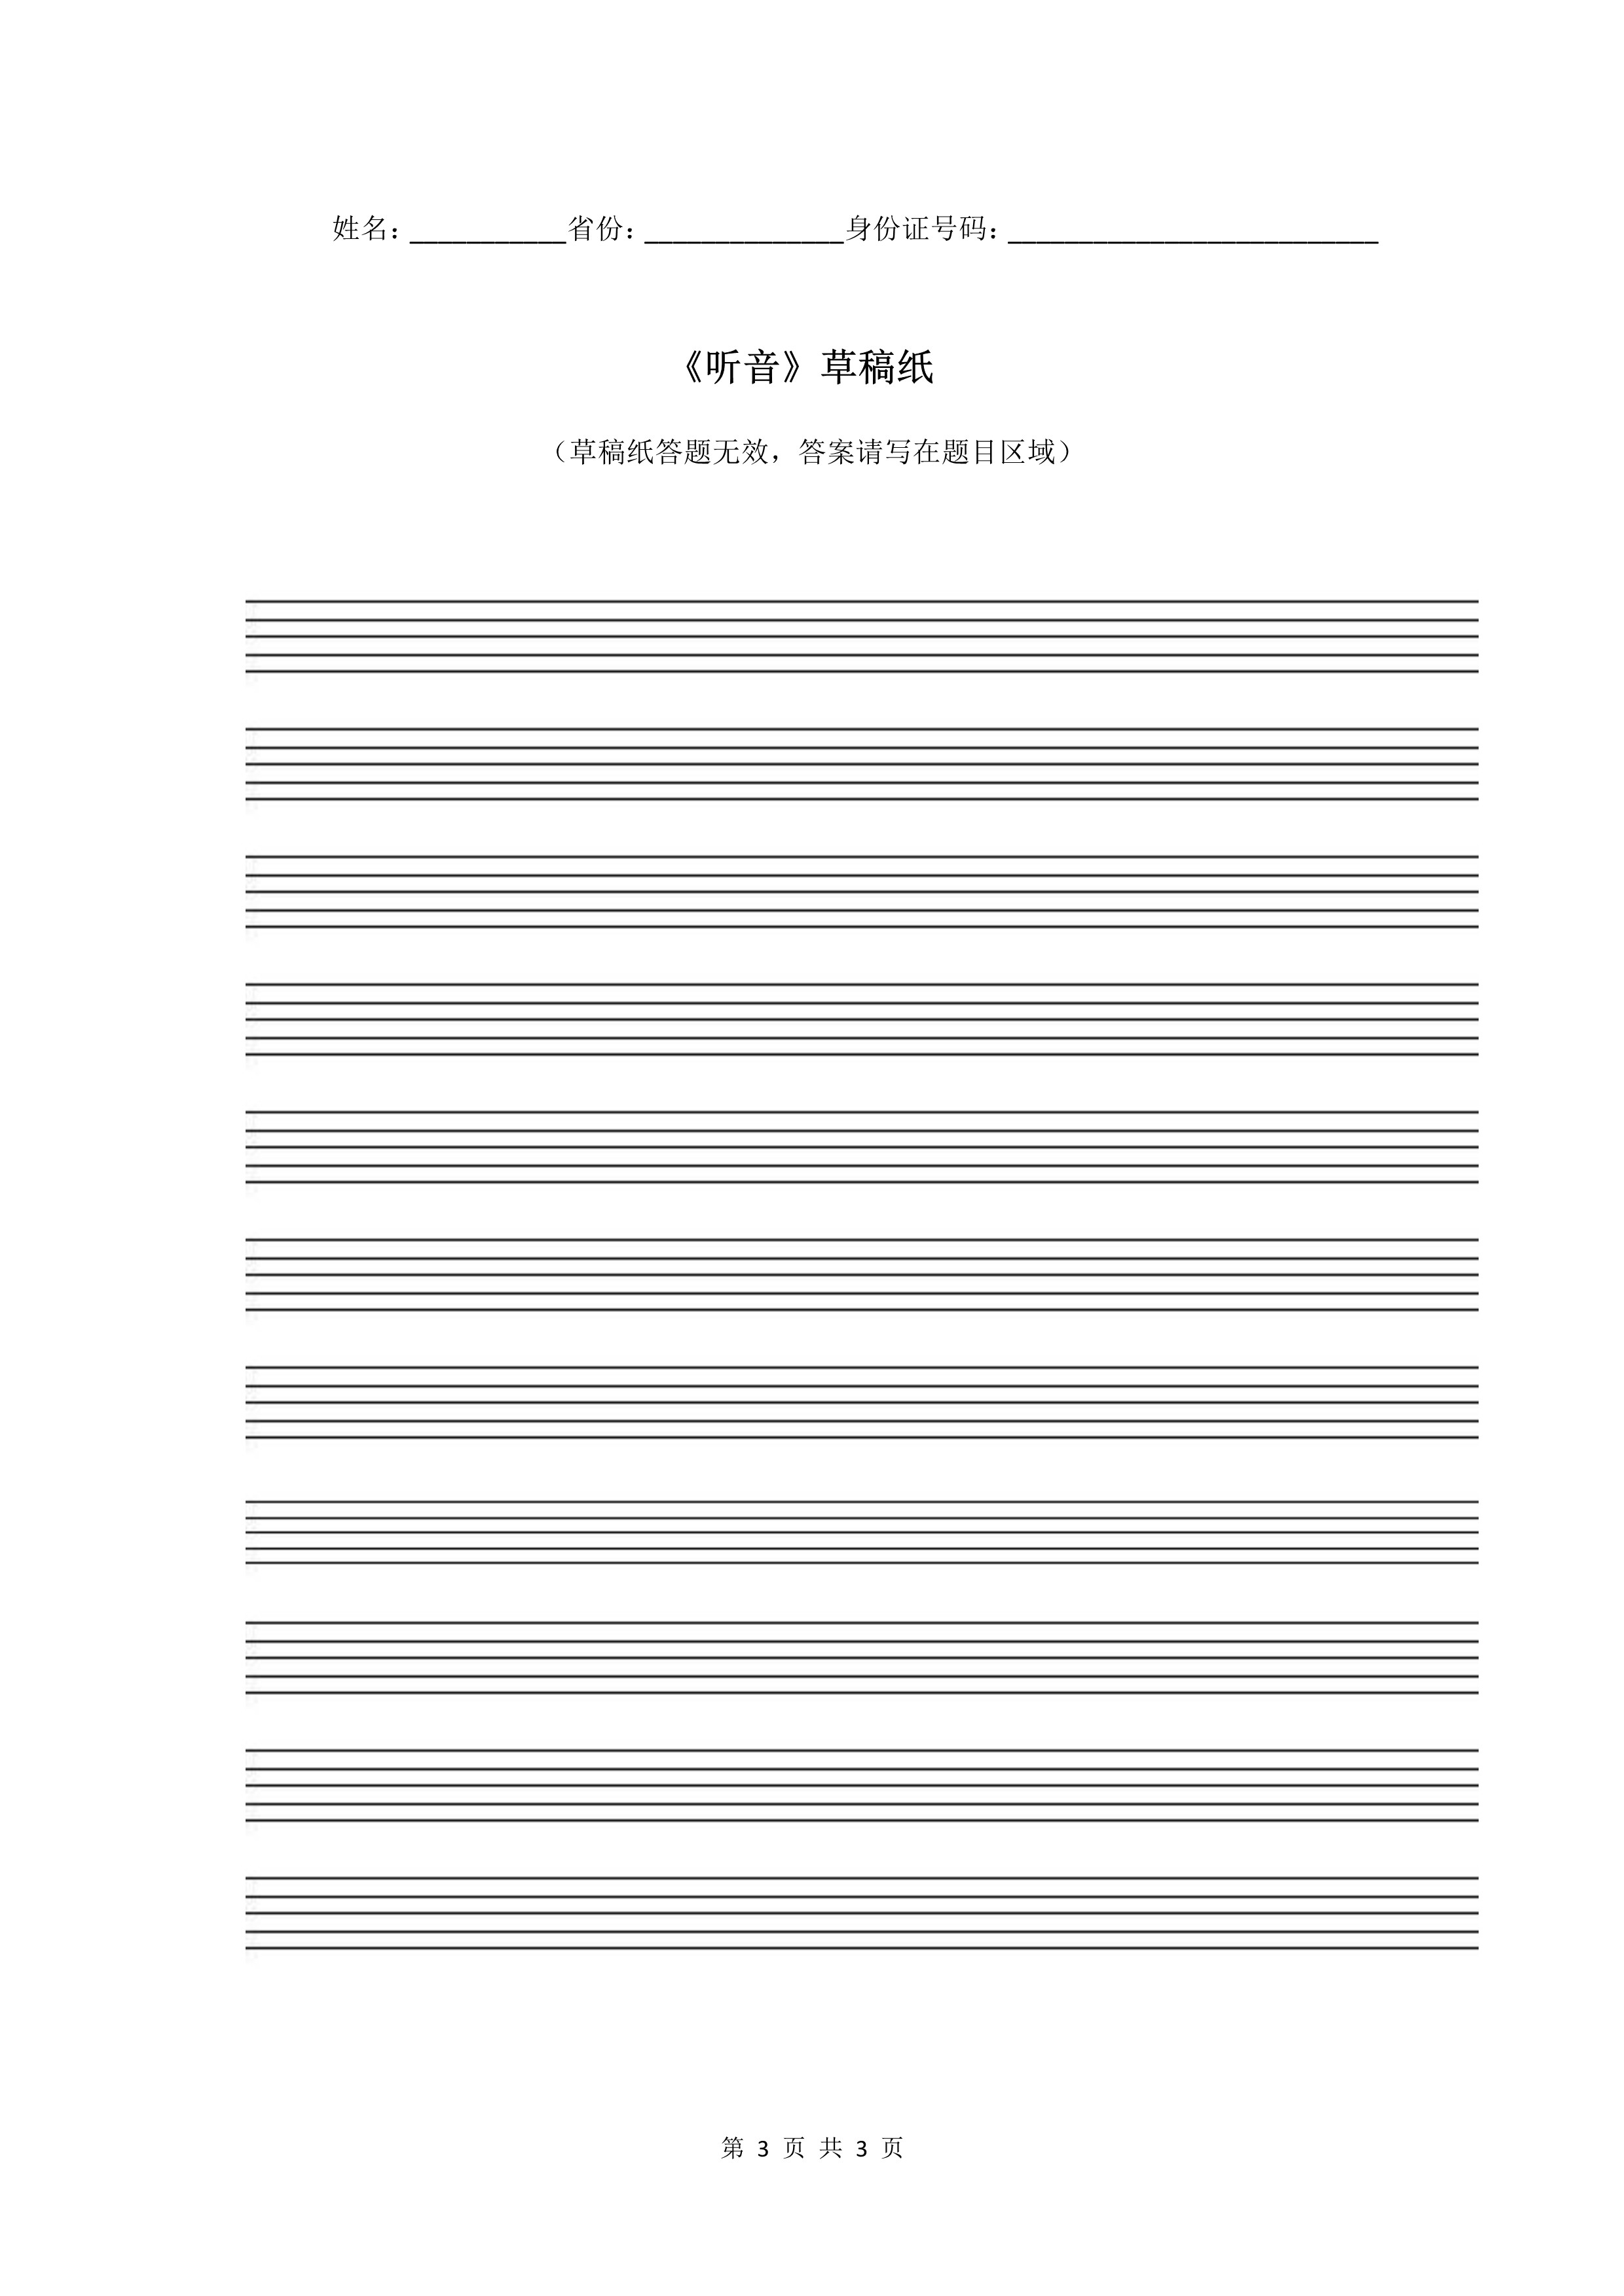 南京艺术学院2022年本科招生音乐类专业《听音》科目考试答题纸及草稿纸_3.jpg